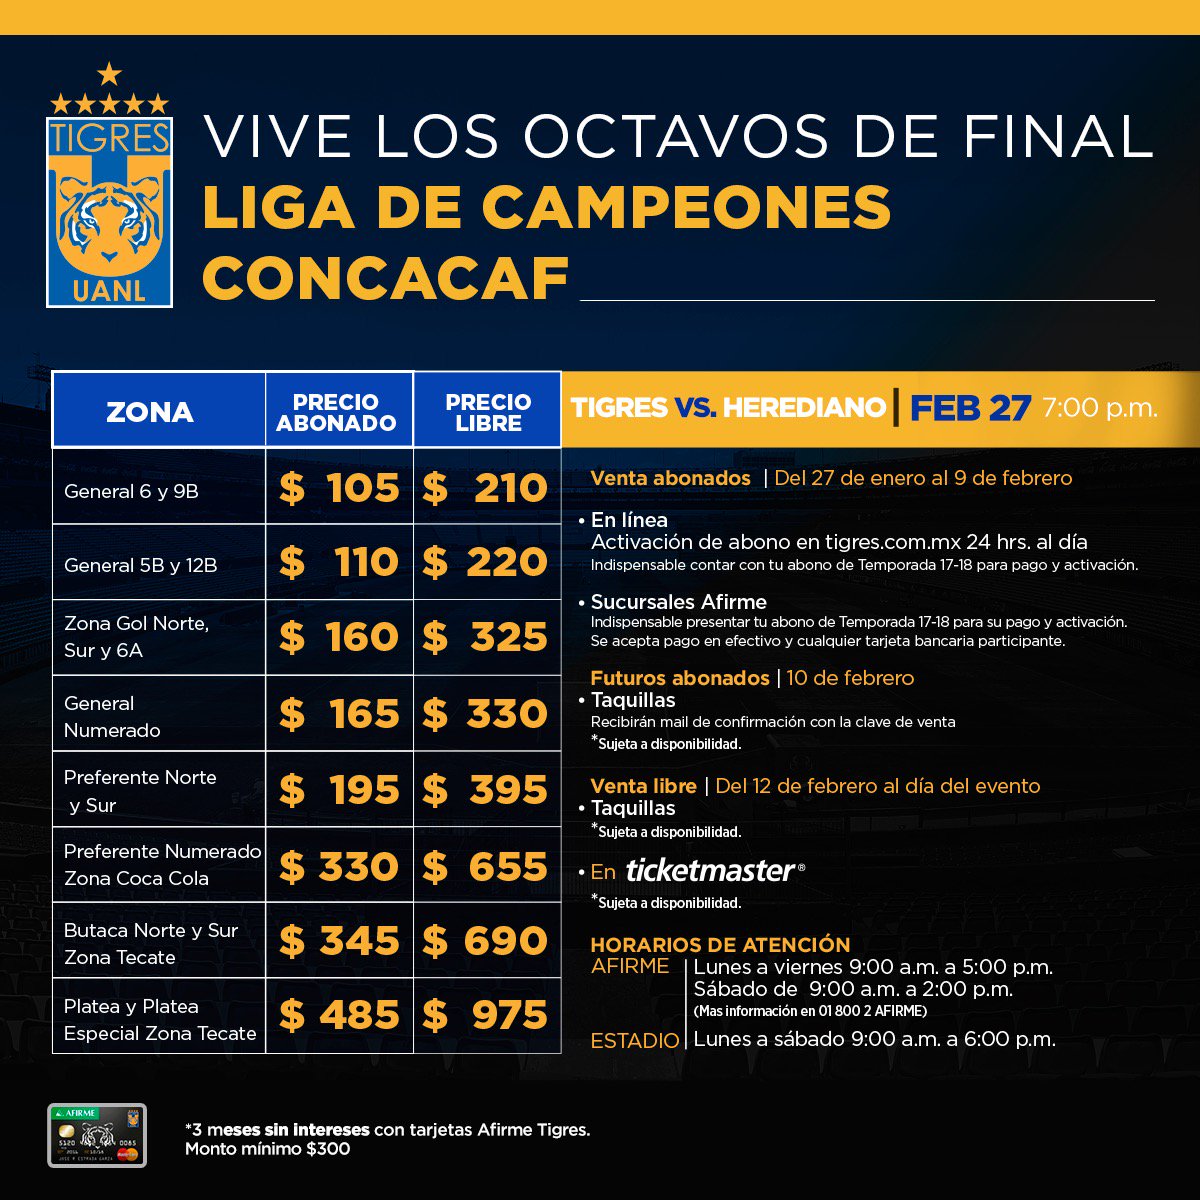 Precios boletos Tigres Concacaf 2018